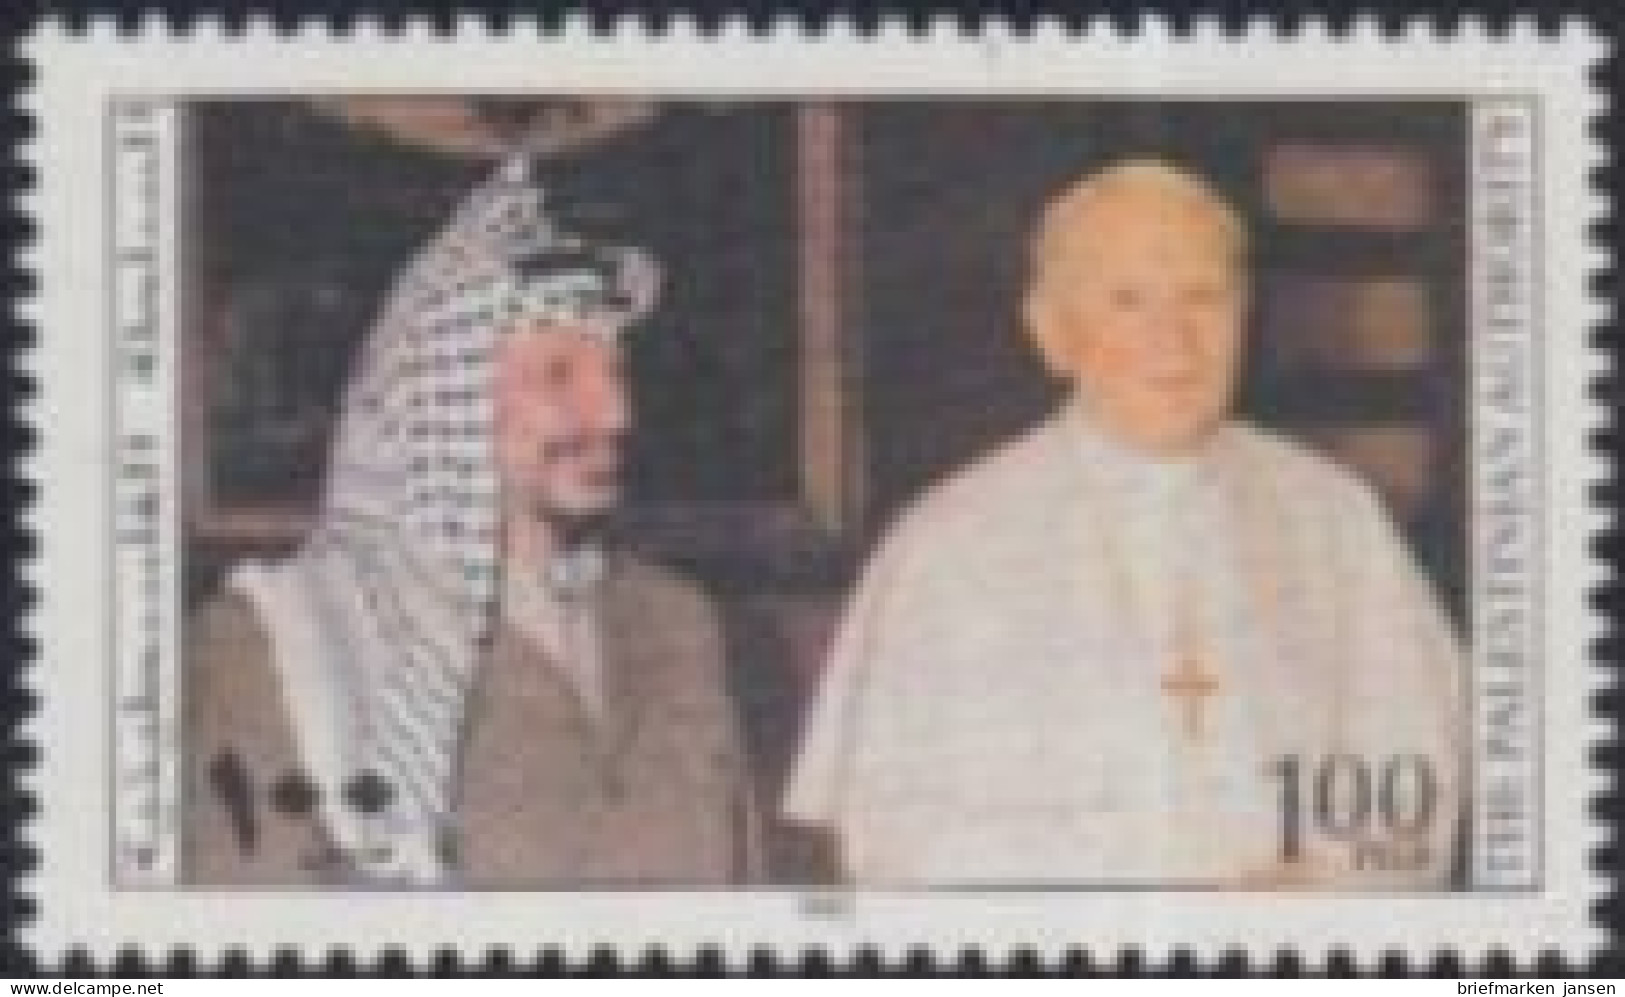 Palästina Mi.Nr. 40 Weihnachten, Arafat Und Papst Johannes Paul II (100) - Palestine